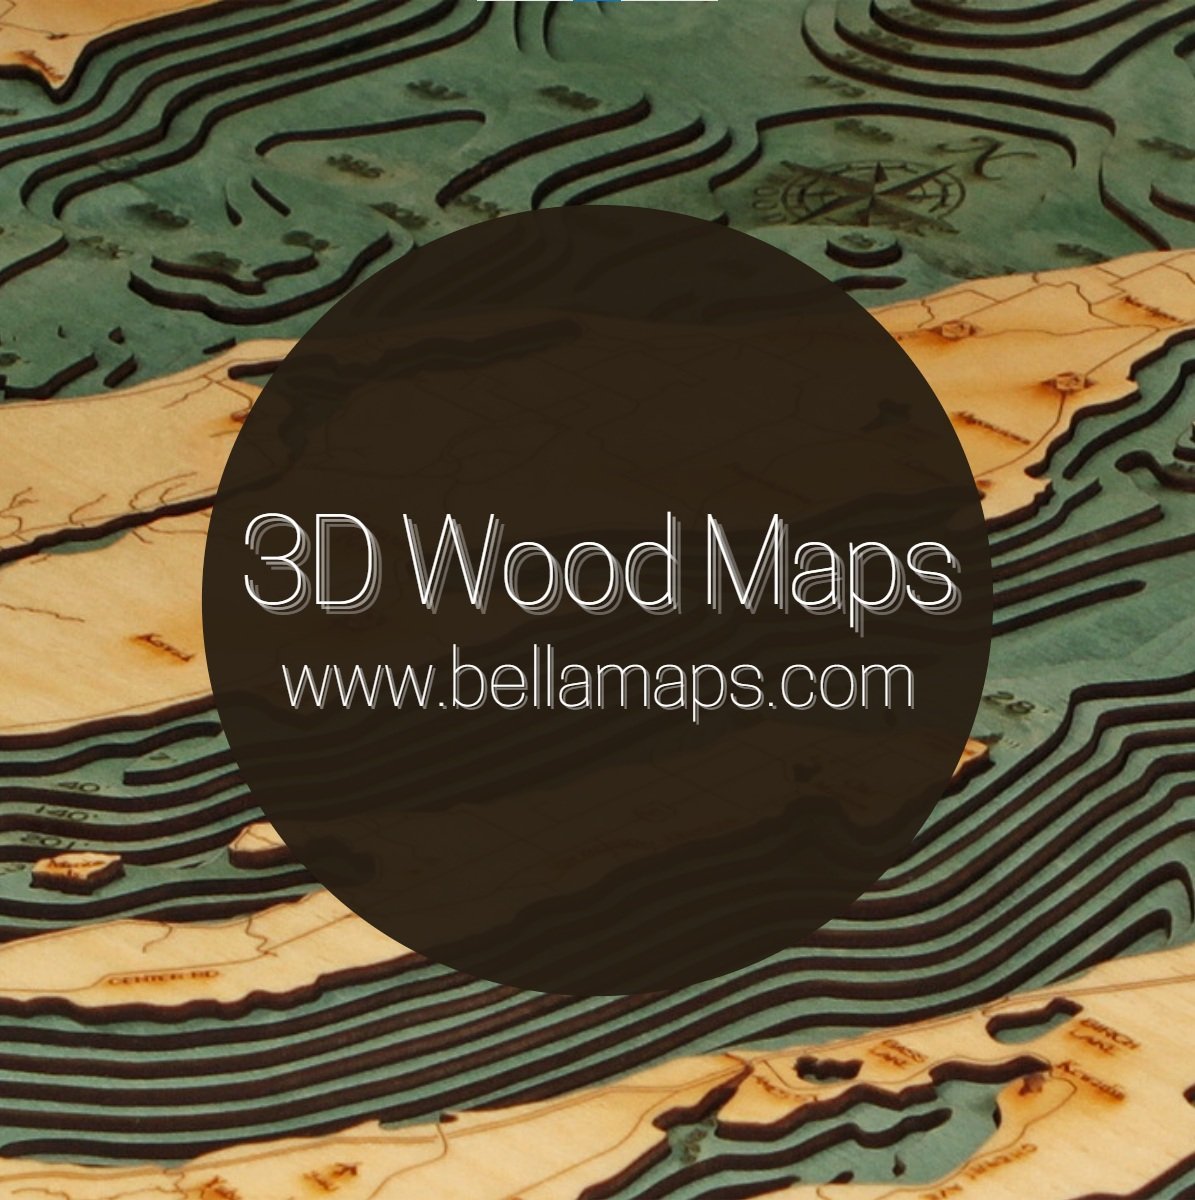 3D WOOD MAPS - BELLA MAPS